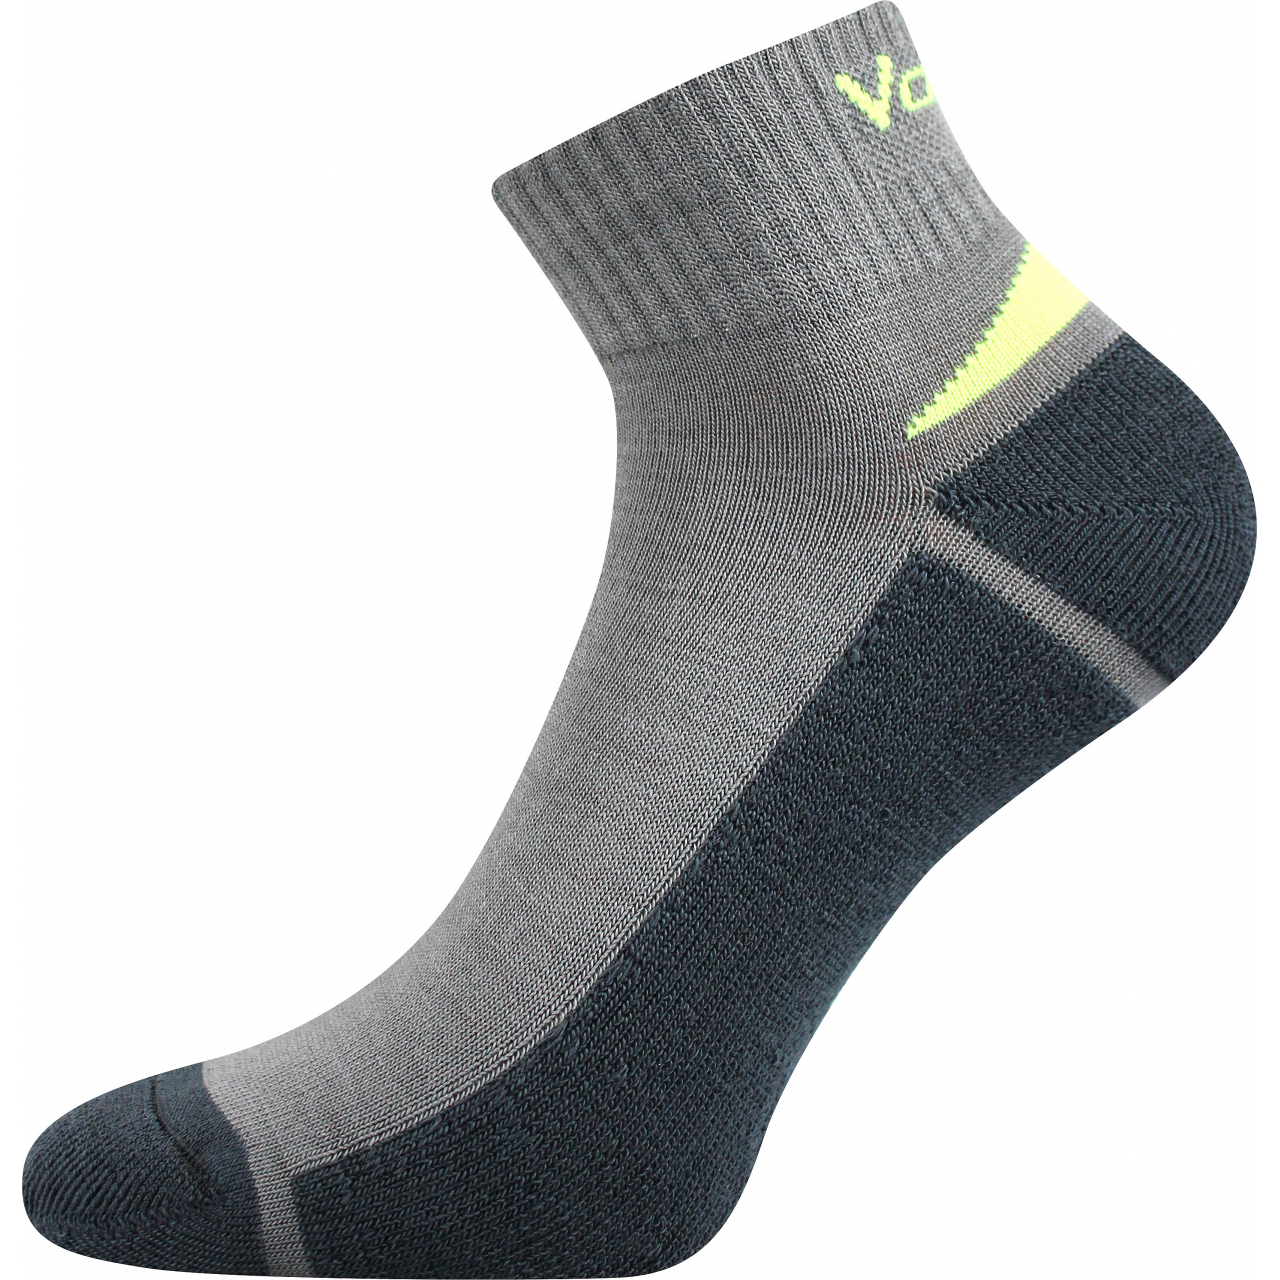 Ponožky snížené sportovní Voxx Aston silproX - světle šedé-šedé, 35-38